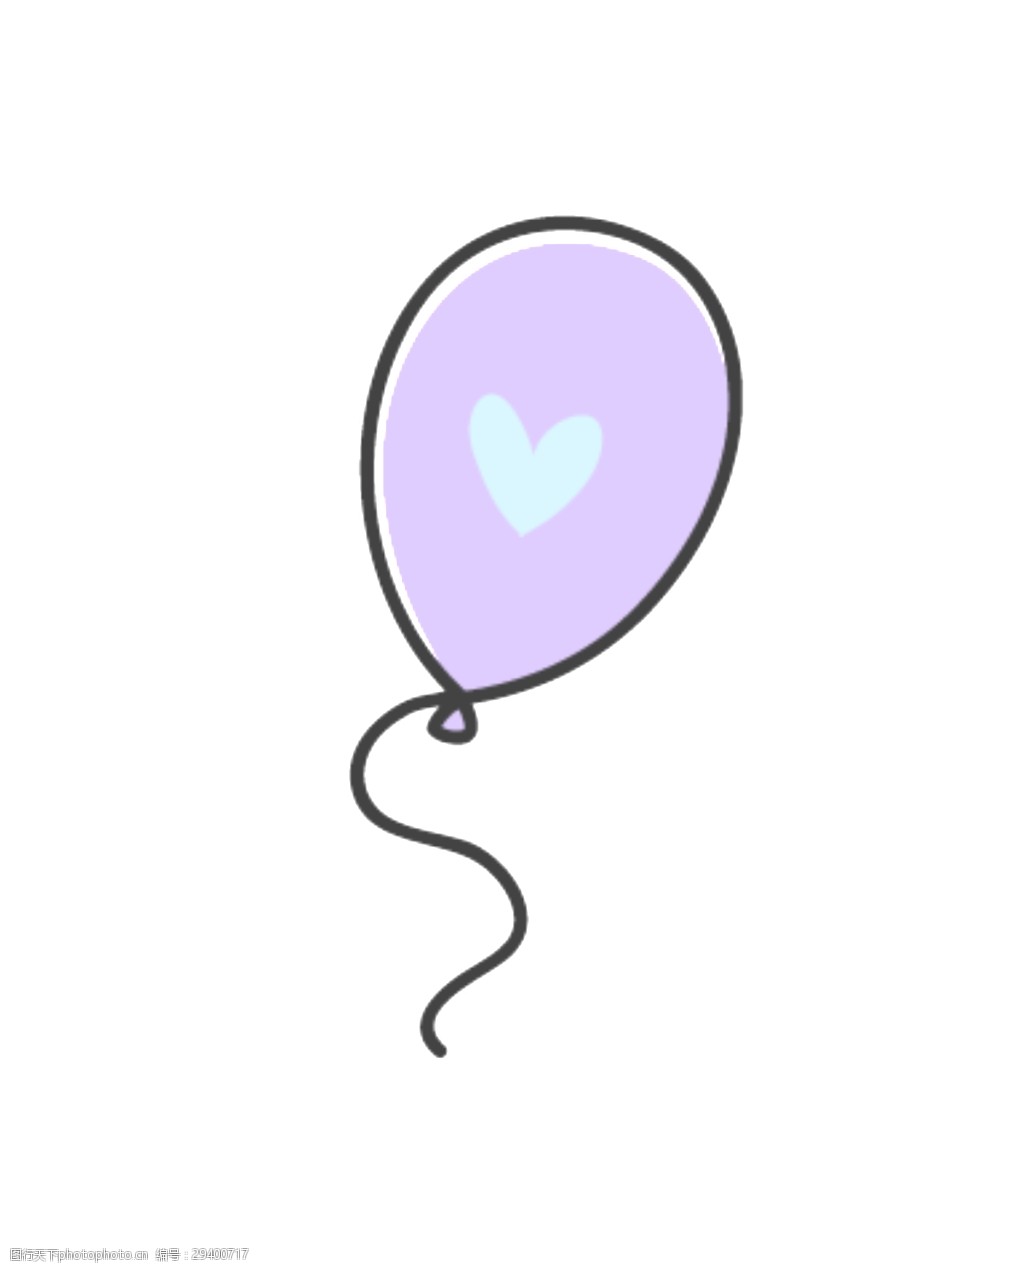 关键词:手绘一个气球矢量素材 爱心 粉紫色 卡通 飘扬 平面素材 设计